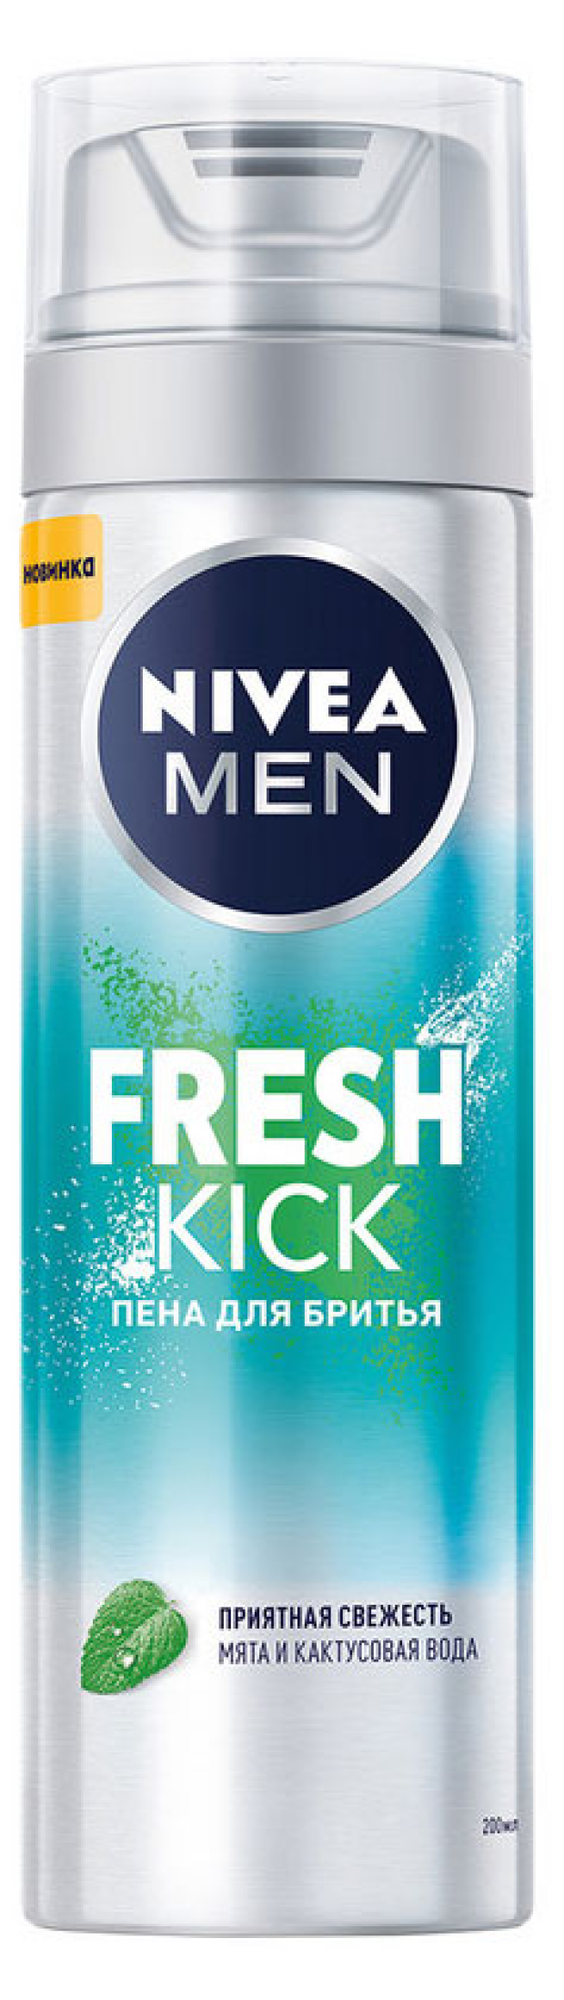 Пена для бритья Men Fresh Kick NIVEA, 200 мл